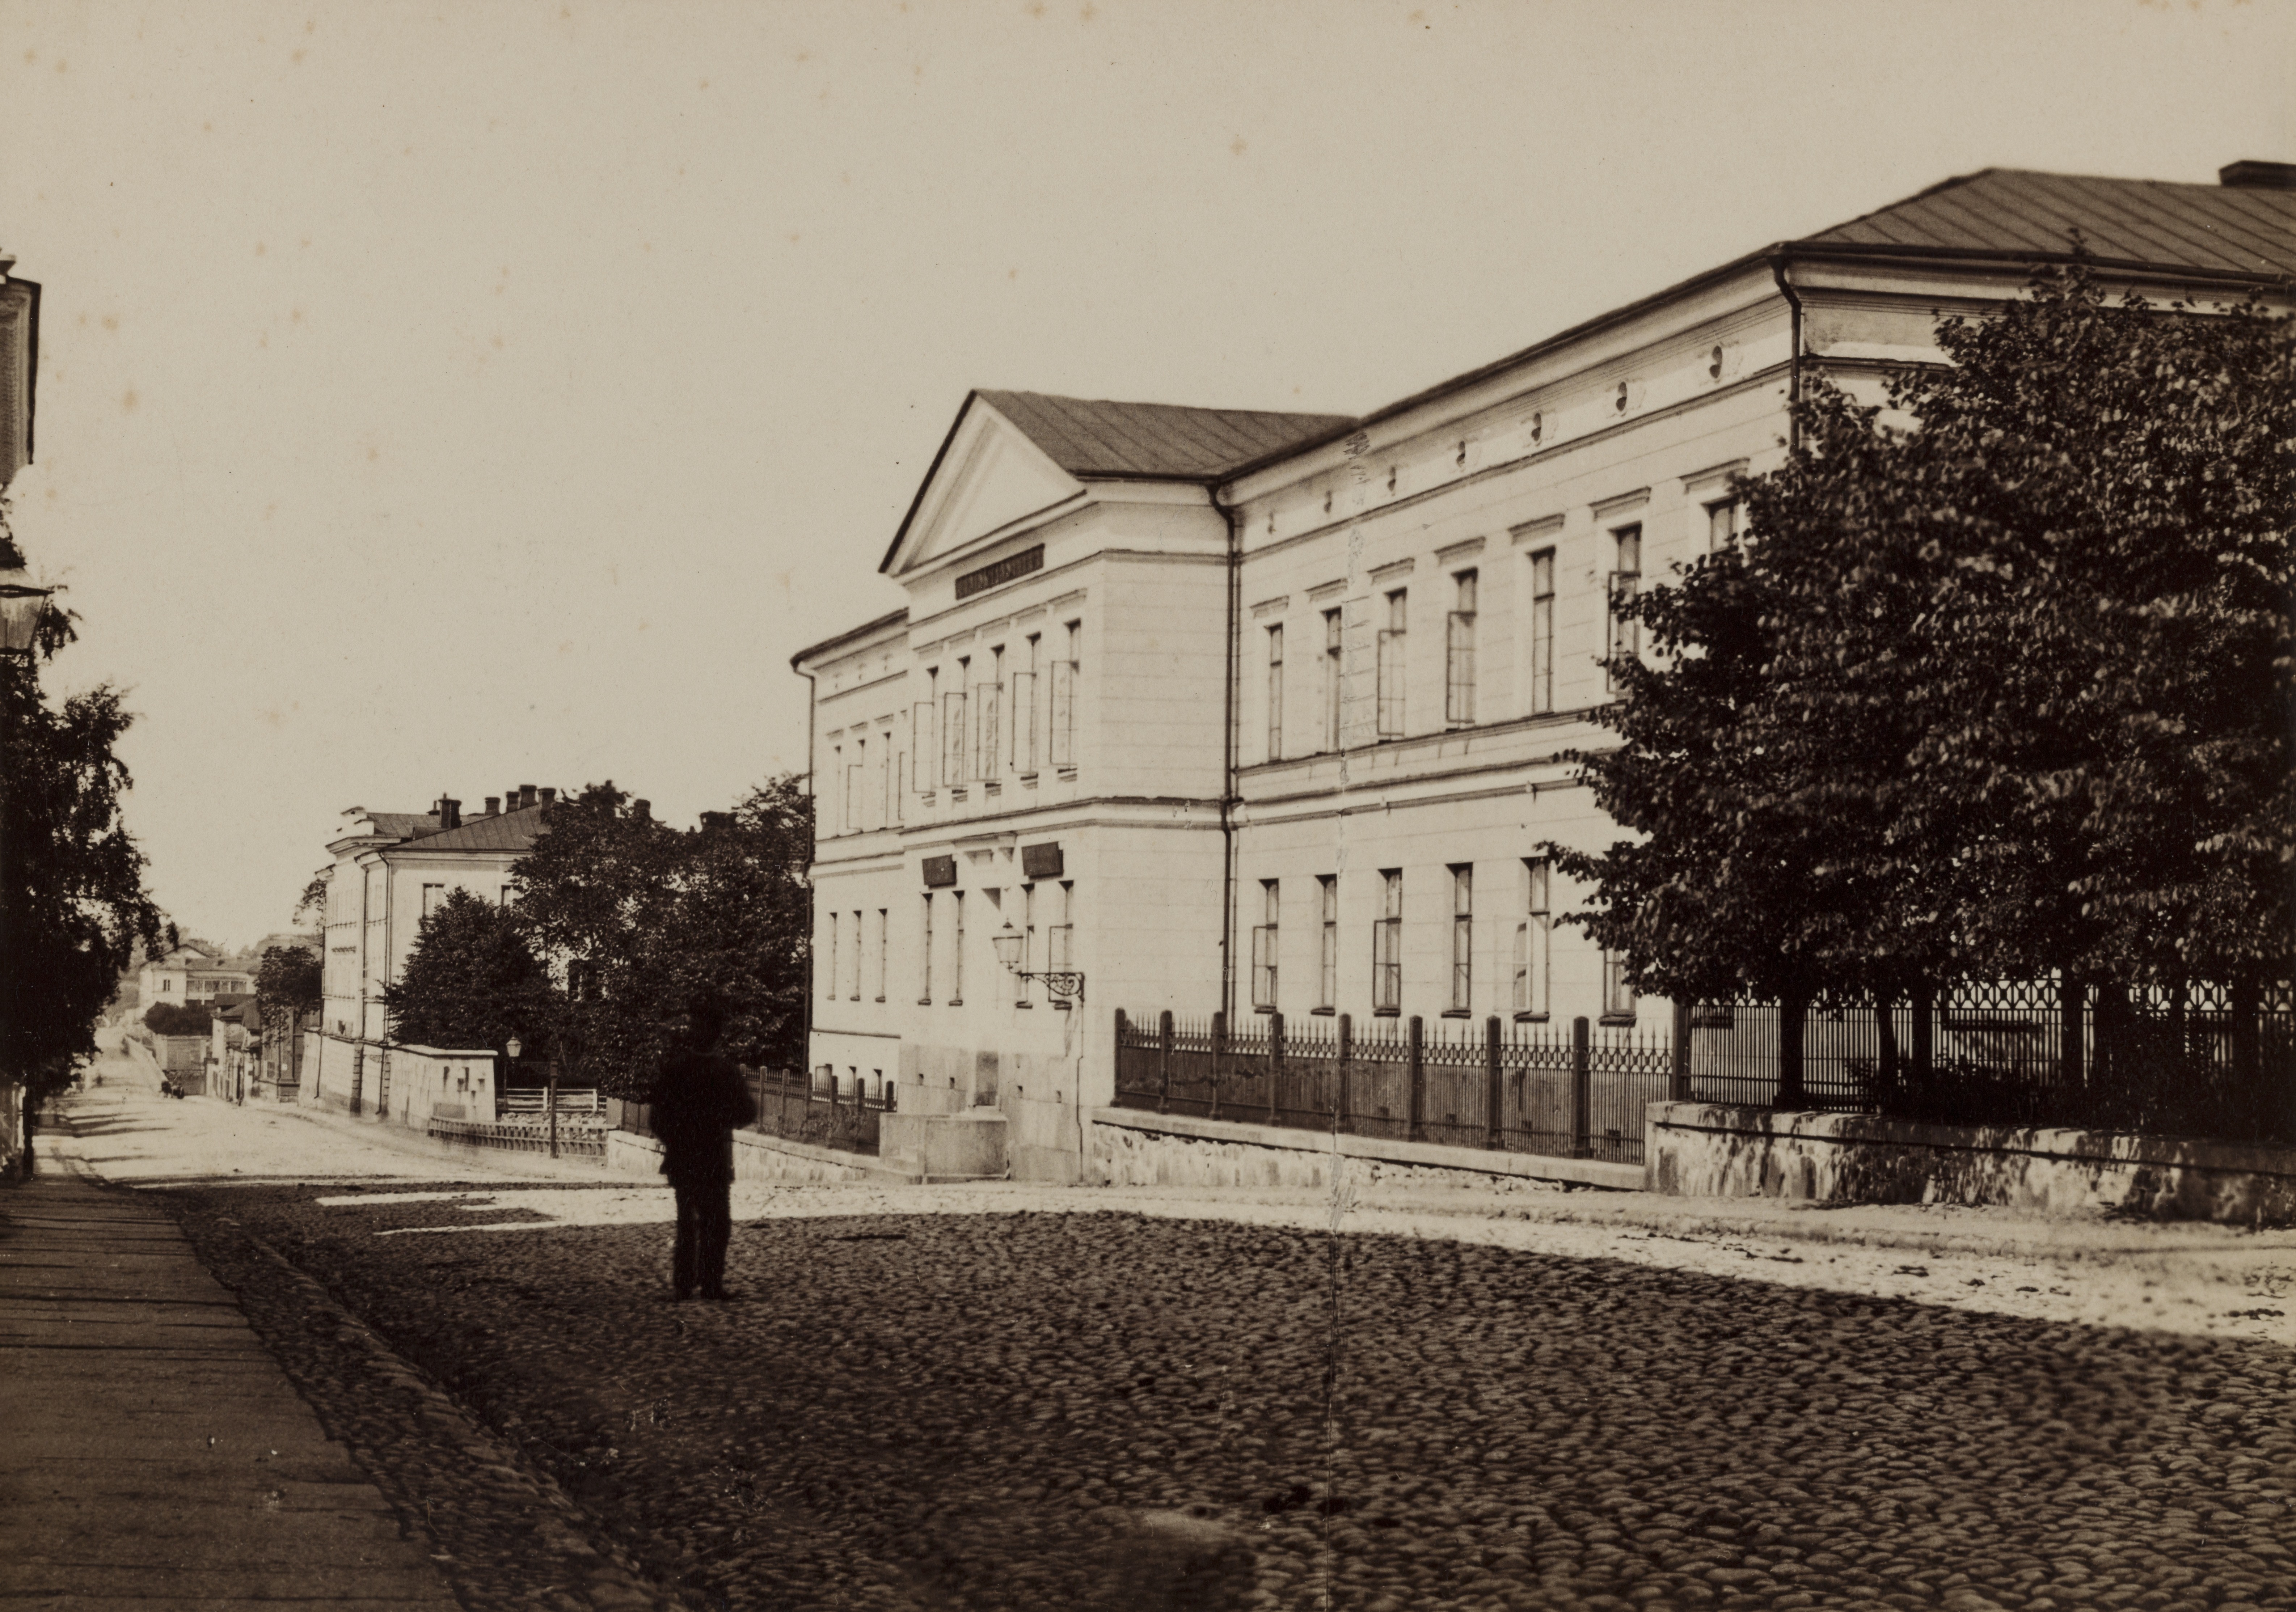 Uusi ja Vanha klinikka, Unioninkatu 33 ja 37. Vanha klinikka, arkkitehti C. L. Engel, 1830-luku. Uusi klinikka, arkkitehti E. B. Lohrmann 1848.